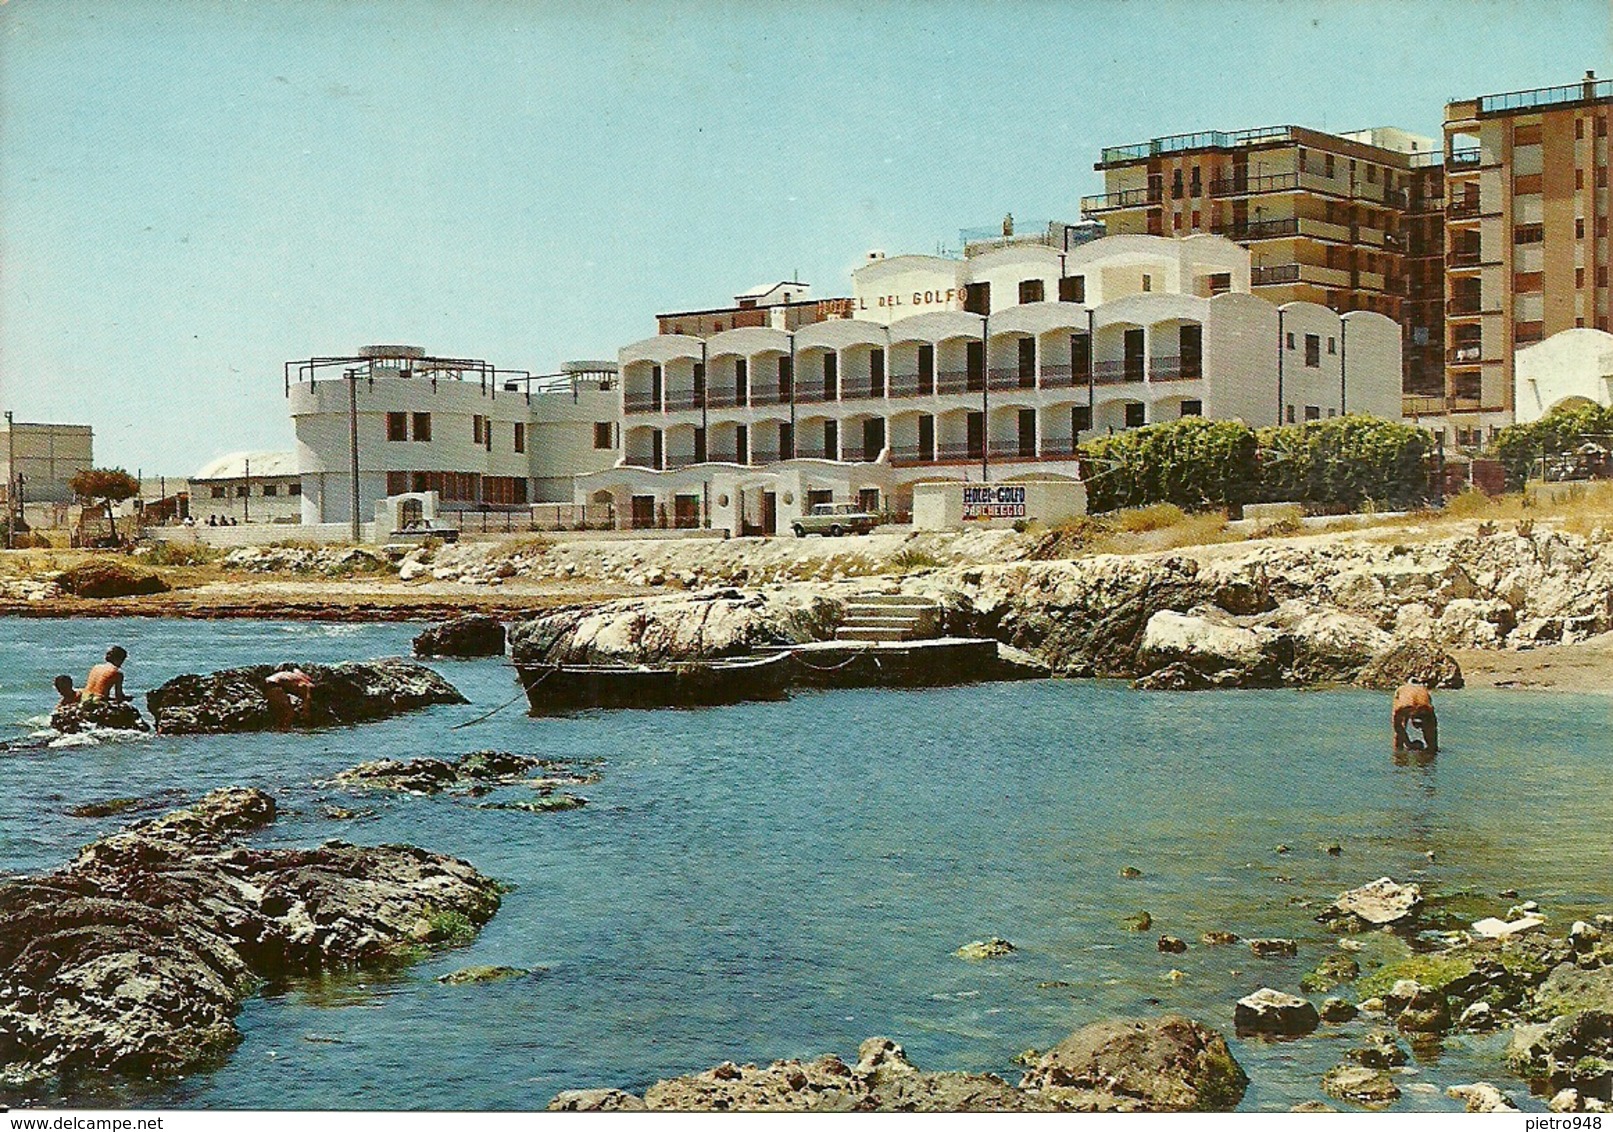 Siponto Fraz. Di Manfredonia (Foggia) Lungomare Del Sole, Hotel Del Golfo - Manfredonia